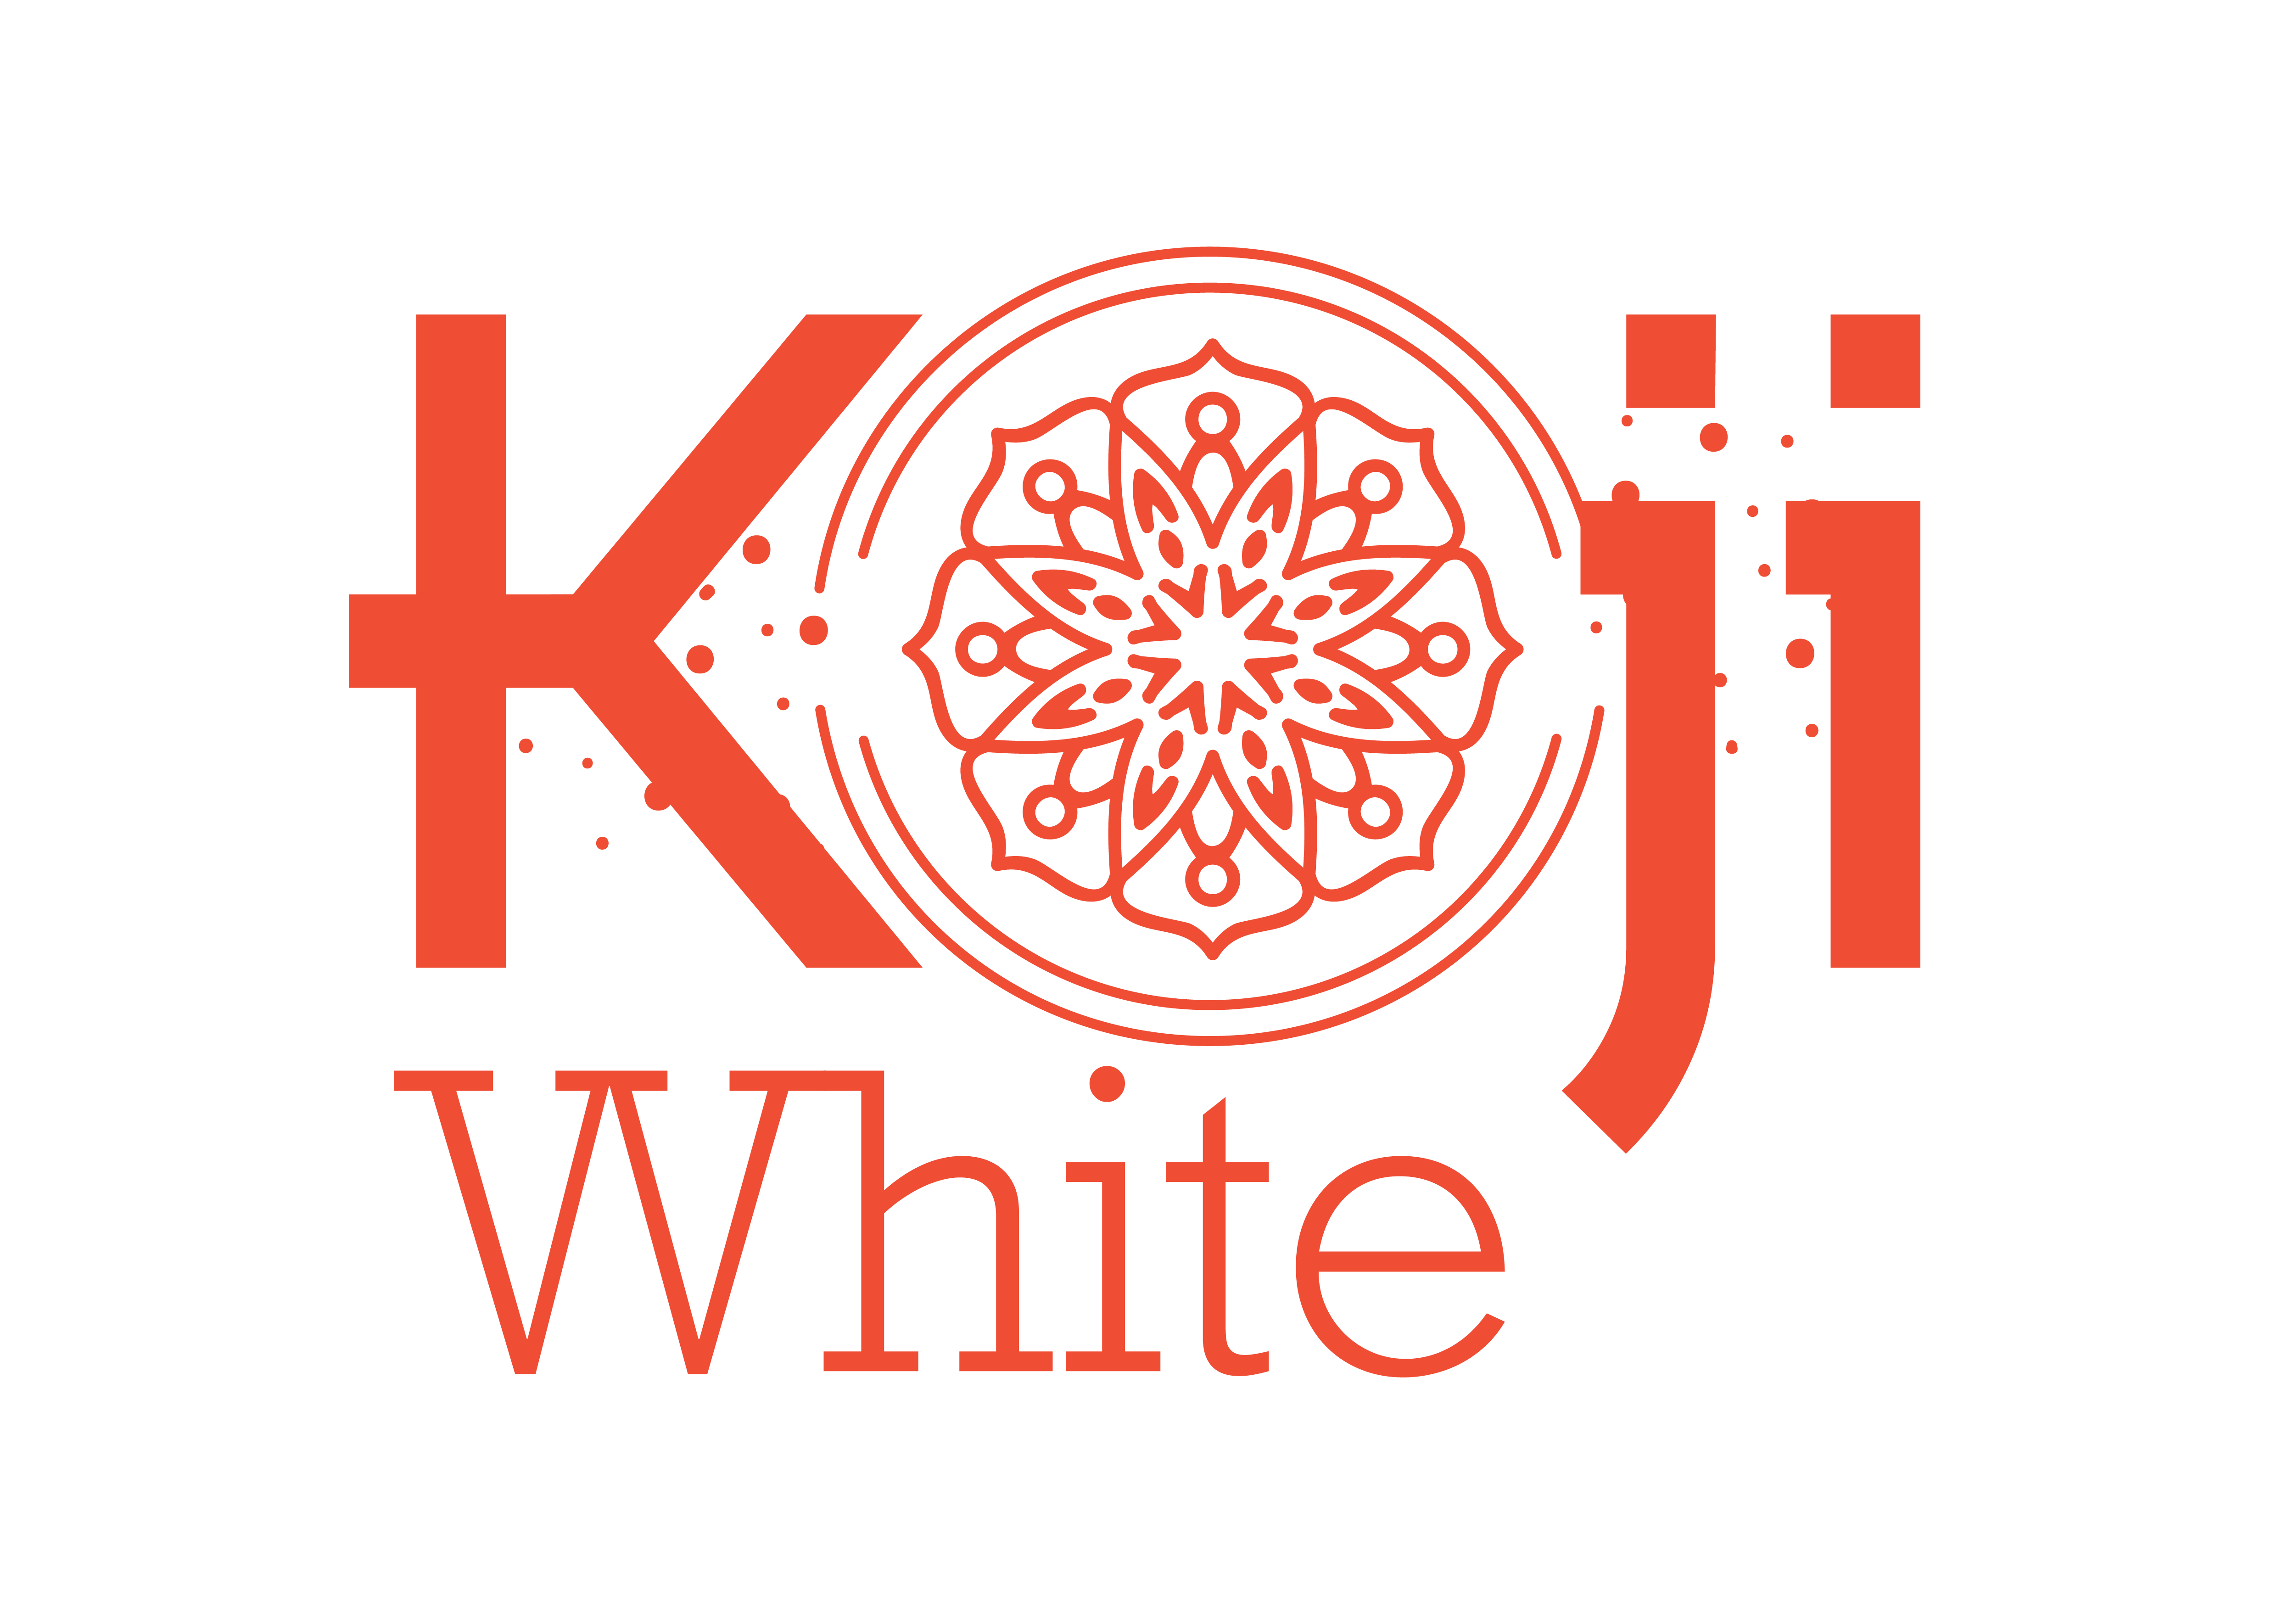 Koji White